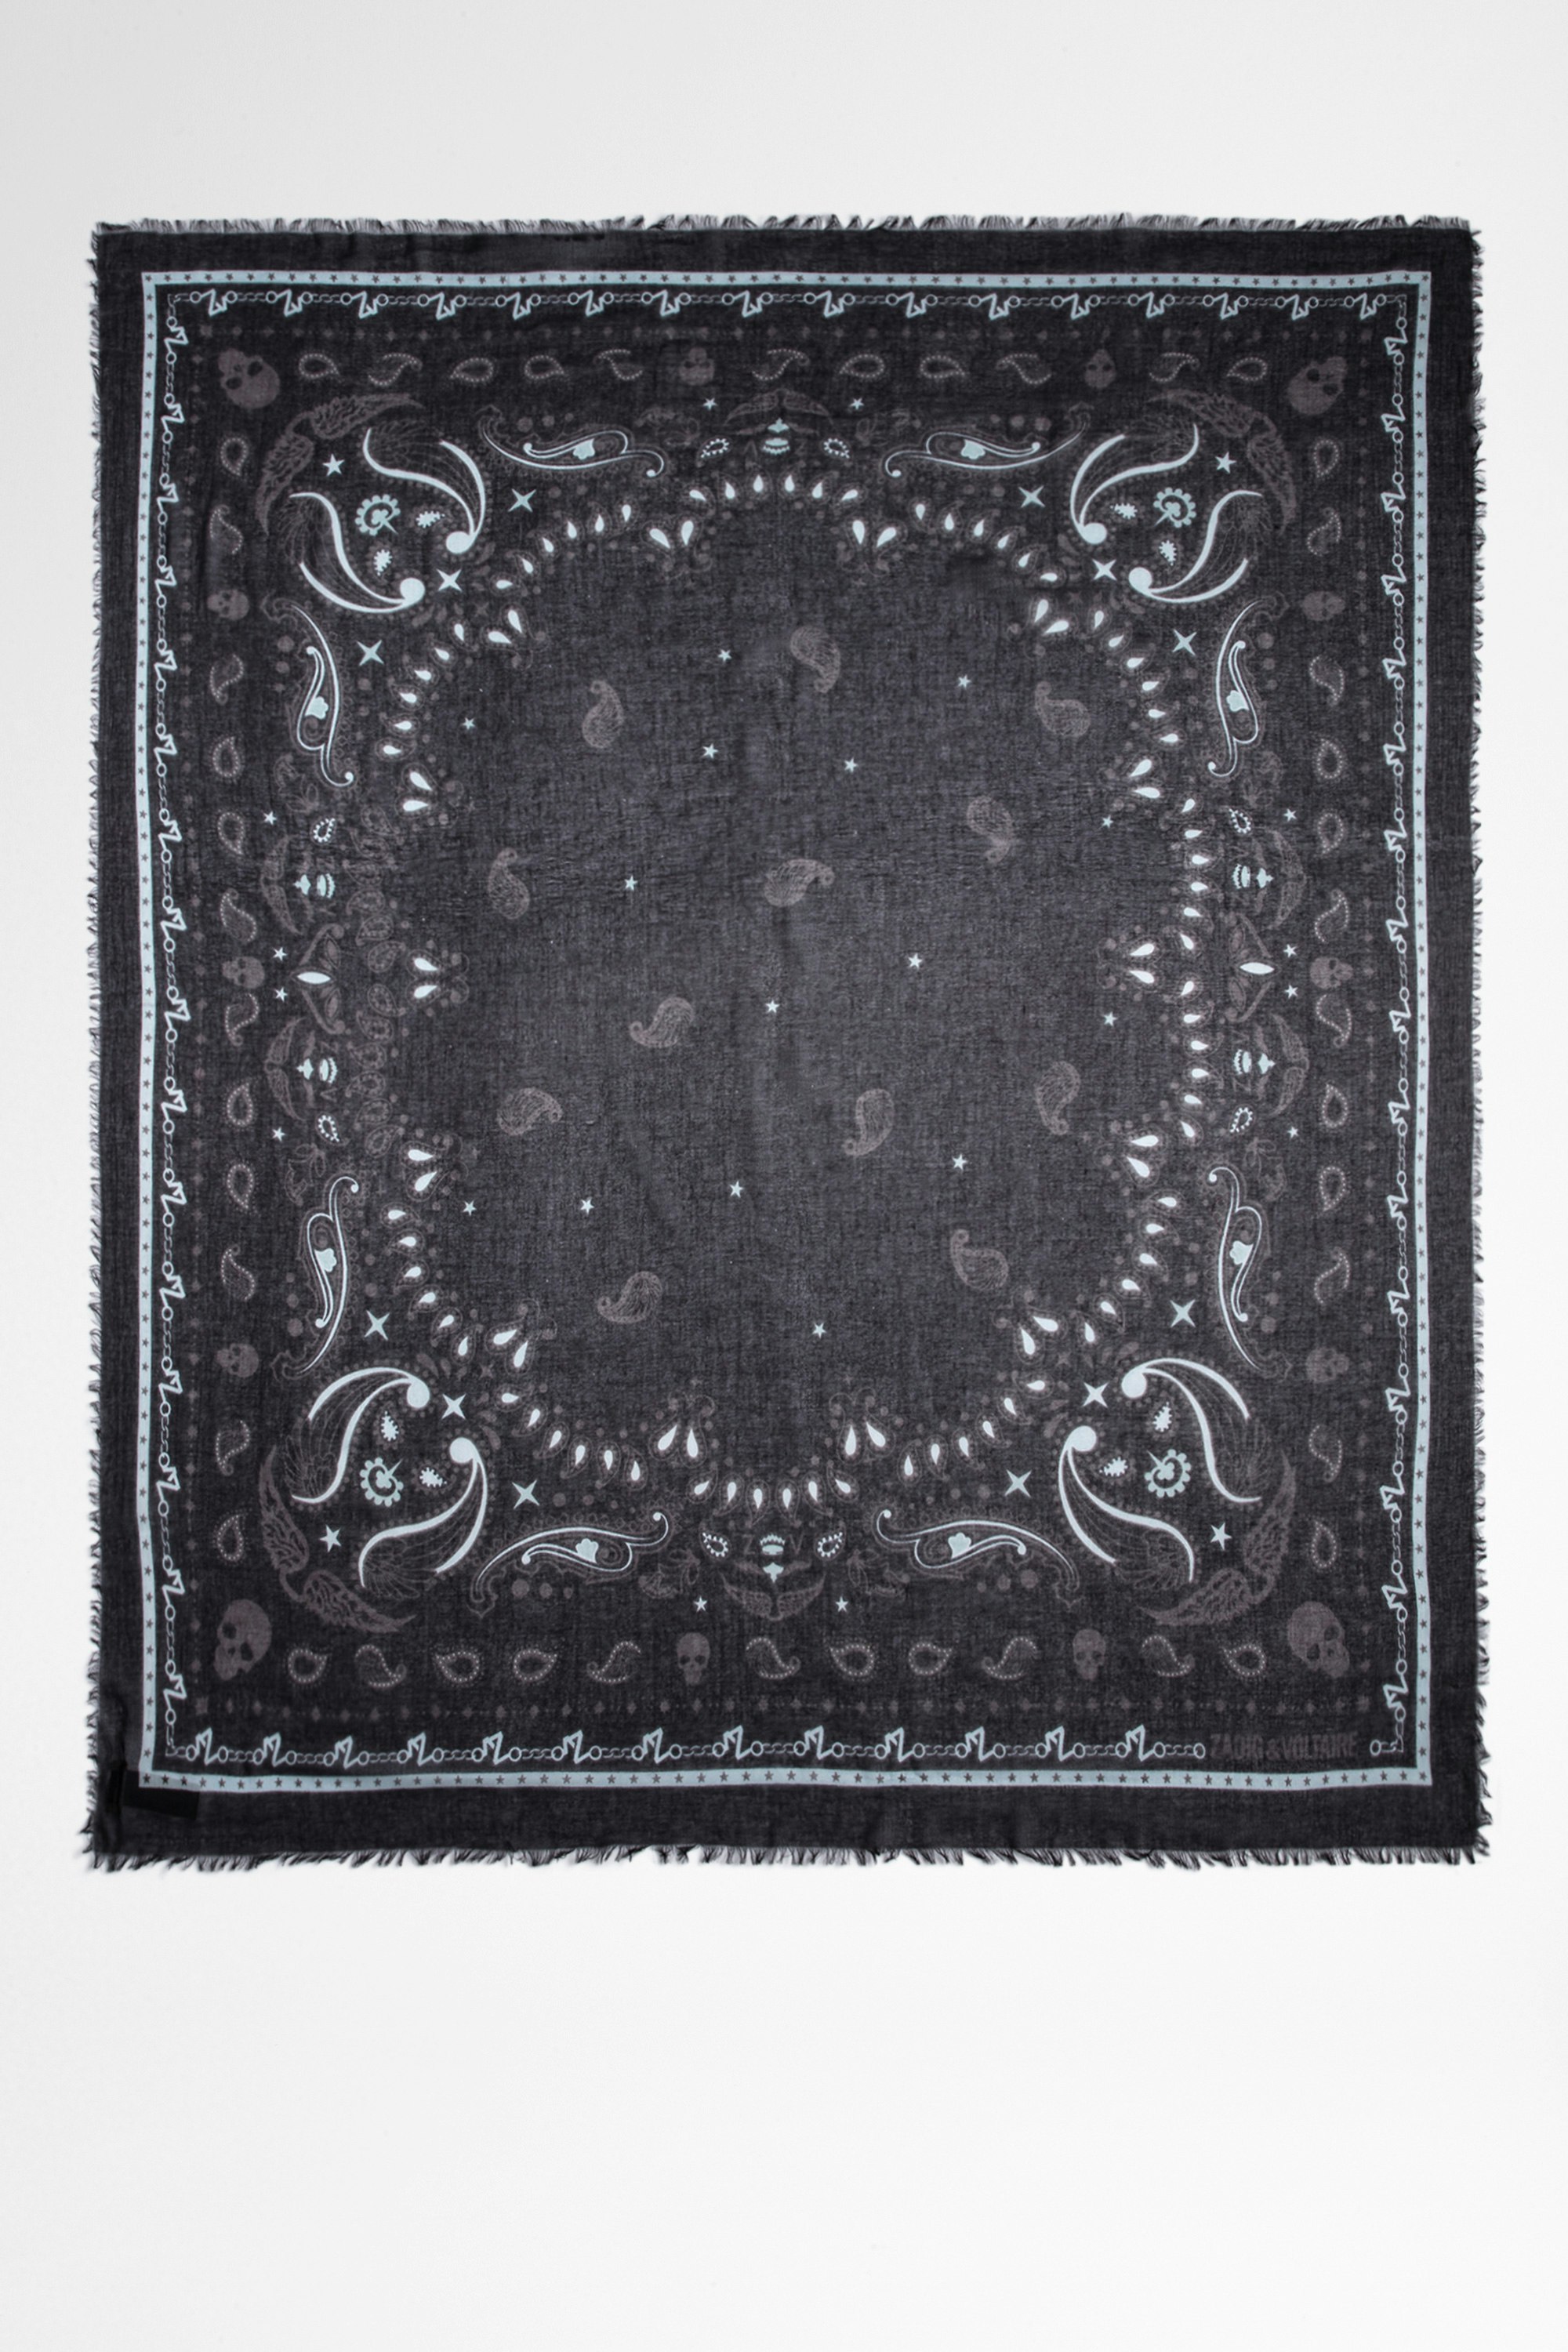 Foulard Delta Foulard en coton imprimé bandana noir Femme. Ce produit est certifié GOTS et fait à partir de fibres issues de l’agriculture biologique.